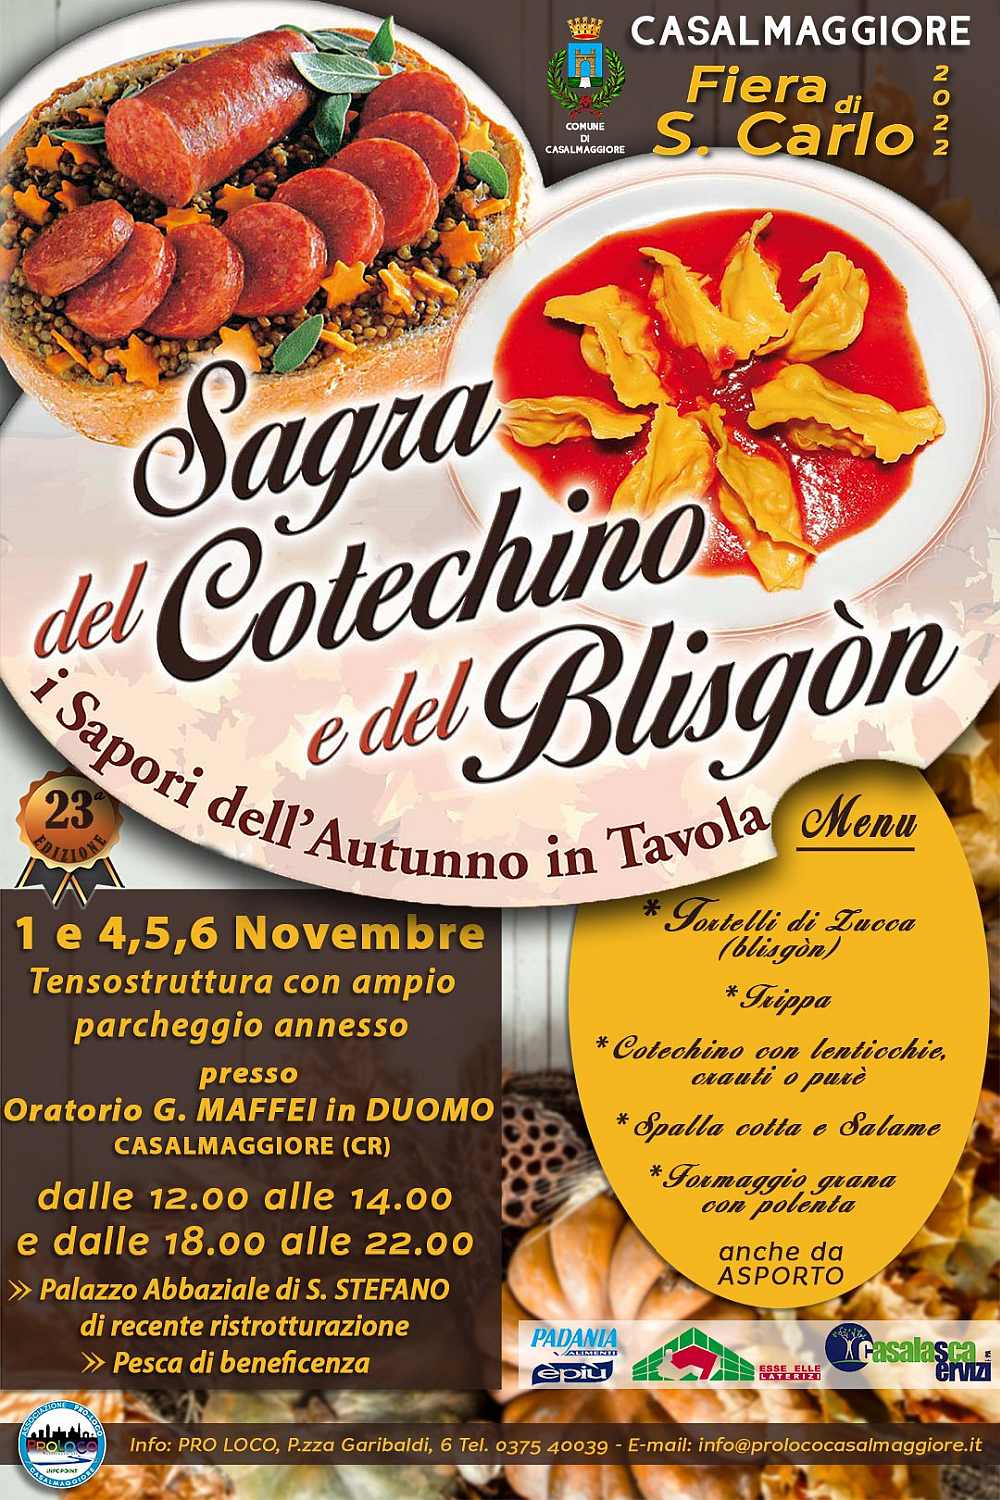 Casalmaggiore (CR)
"Sagra del Cotechino e del Blisgon"
1 e 4-5-6 Novembre 2002
